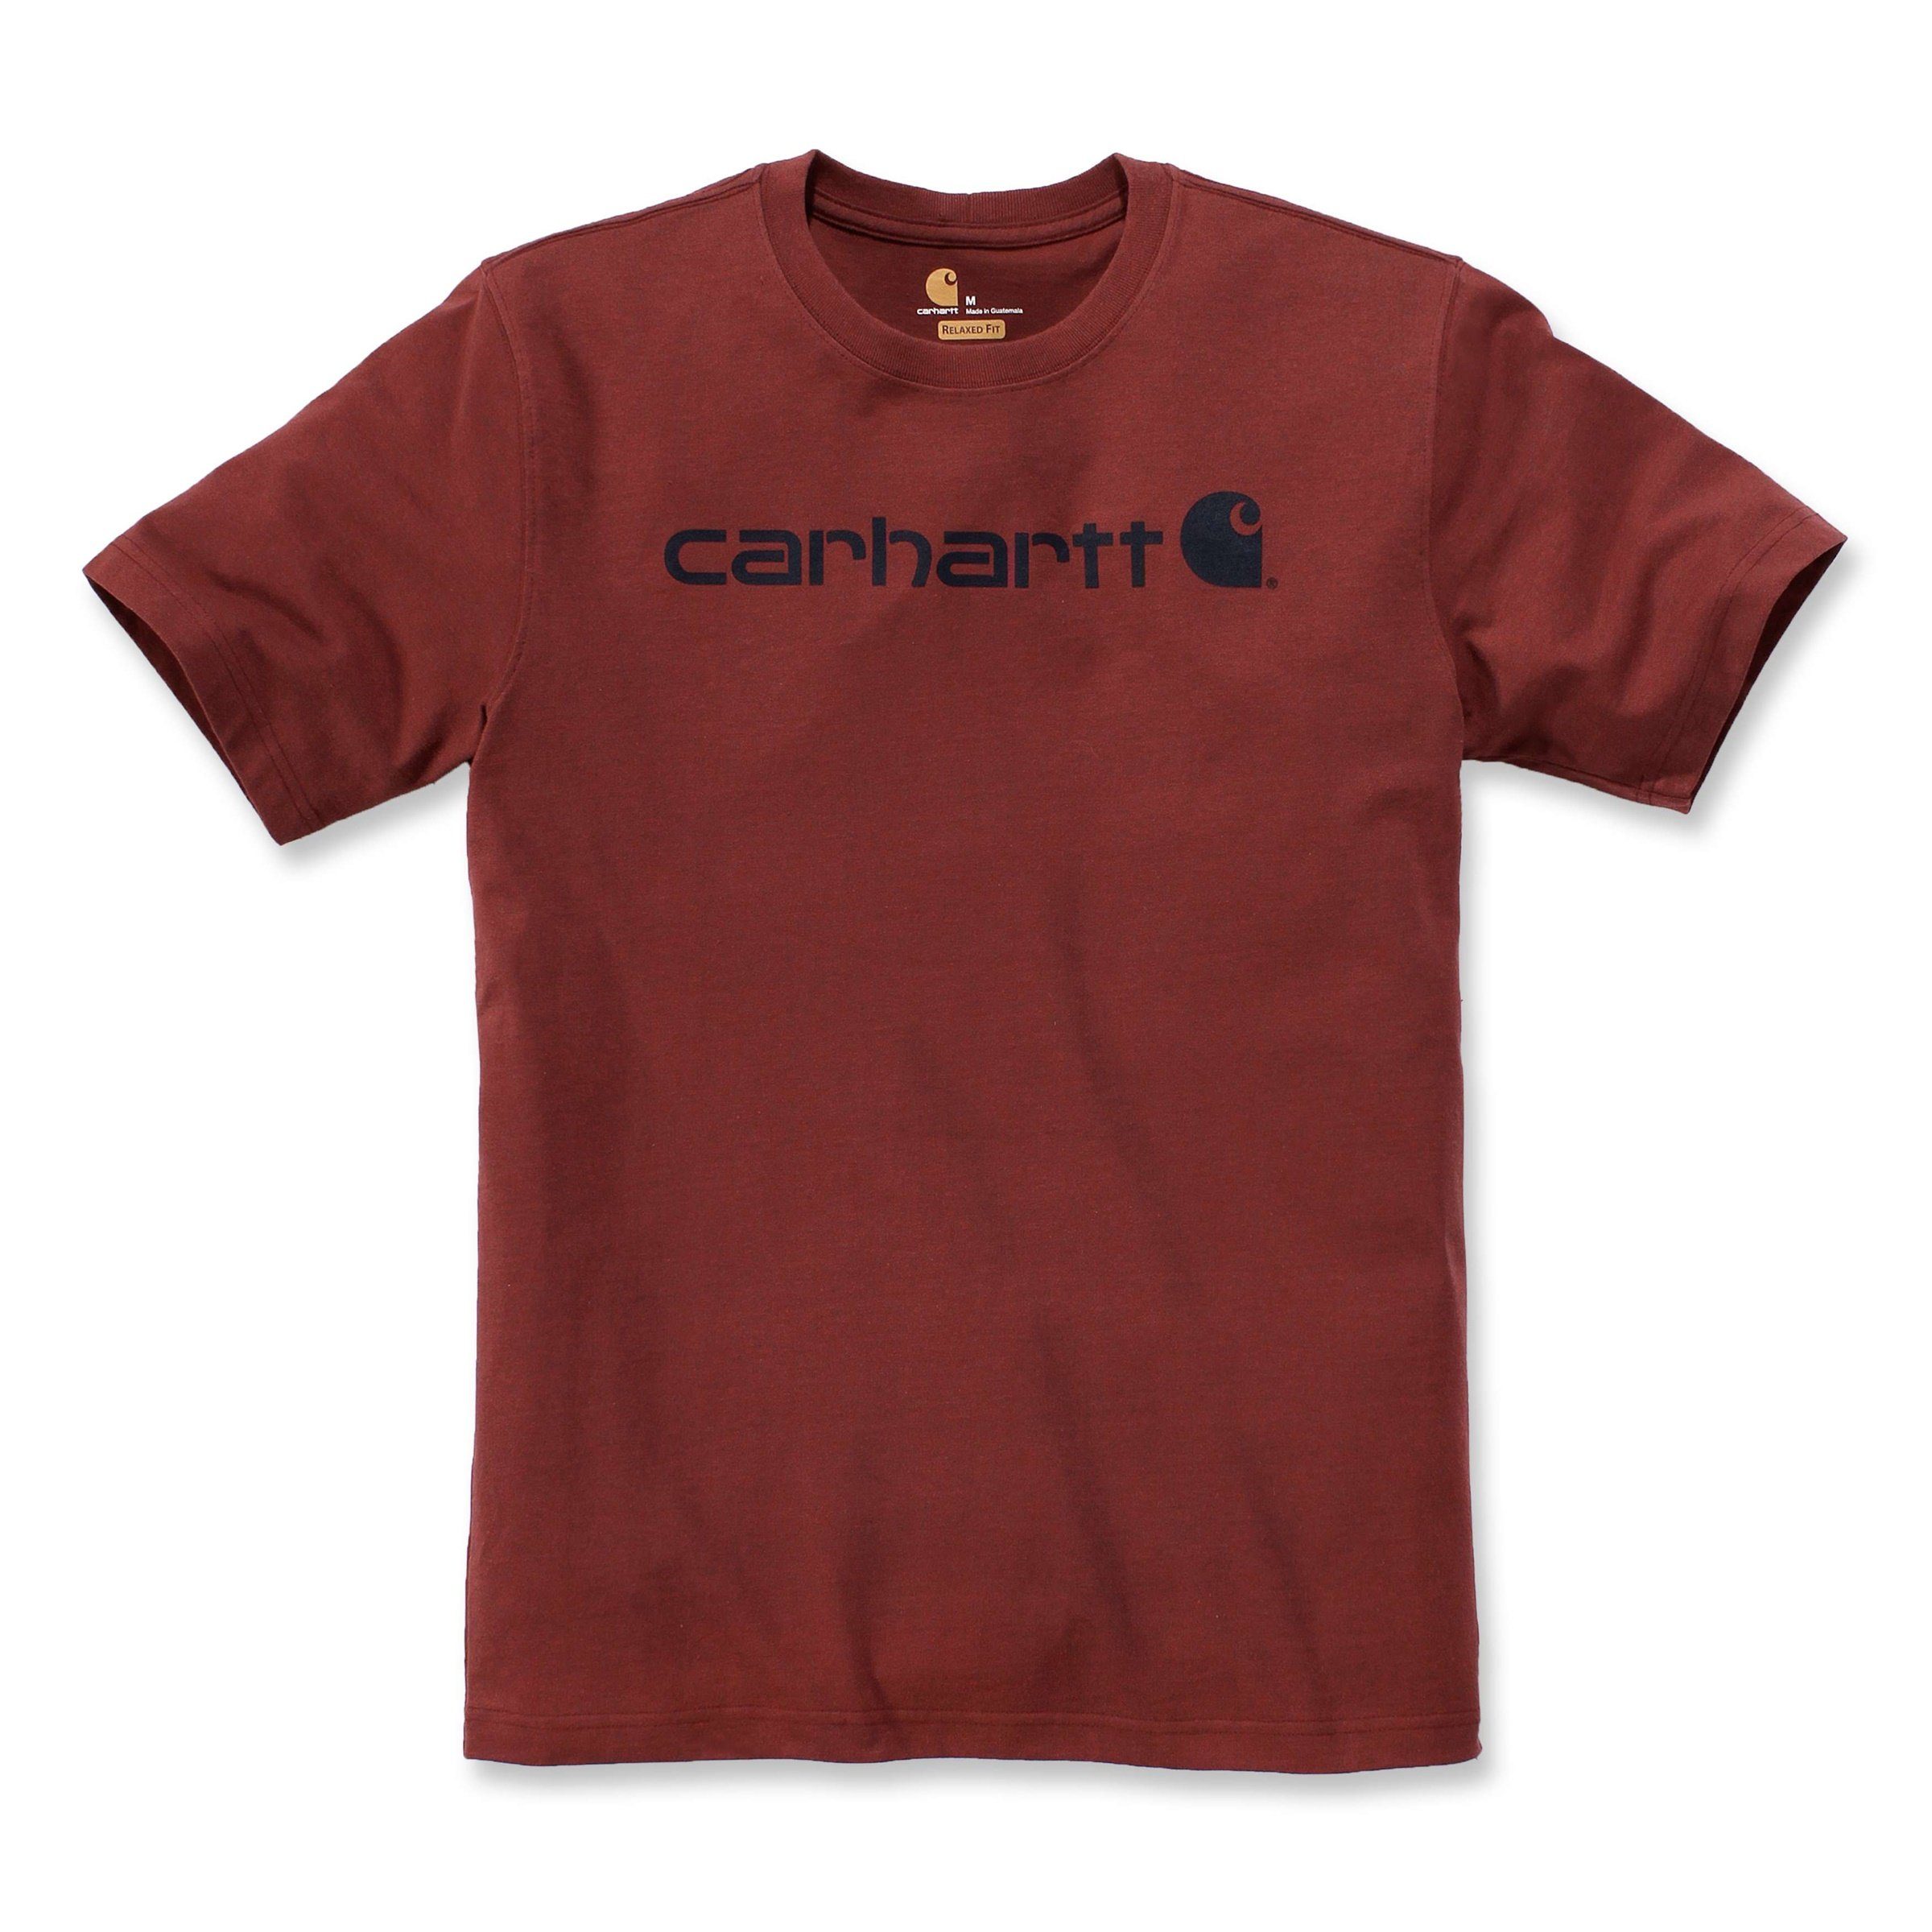 Carhartt T-Shirt Adult T-Shirt Short-Sleeve Fit Heavyweight grey Logo Graphic Carhartt heather Herren Relaxed